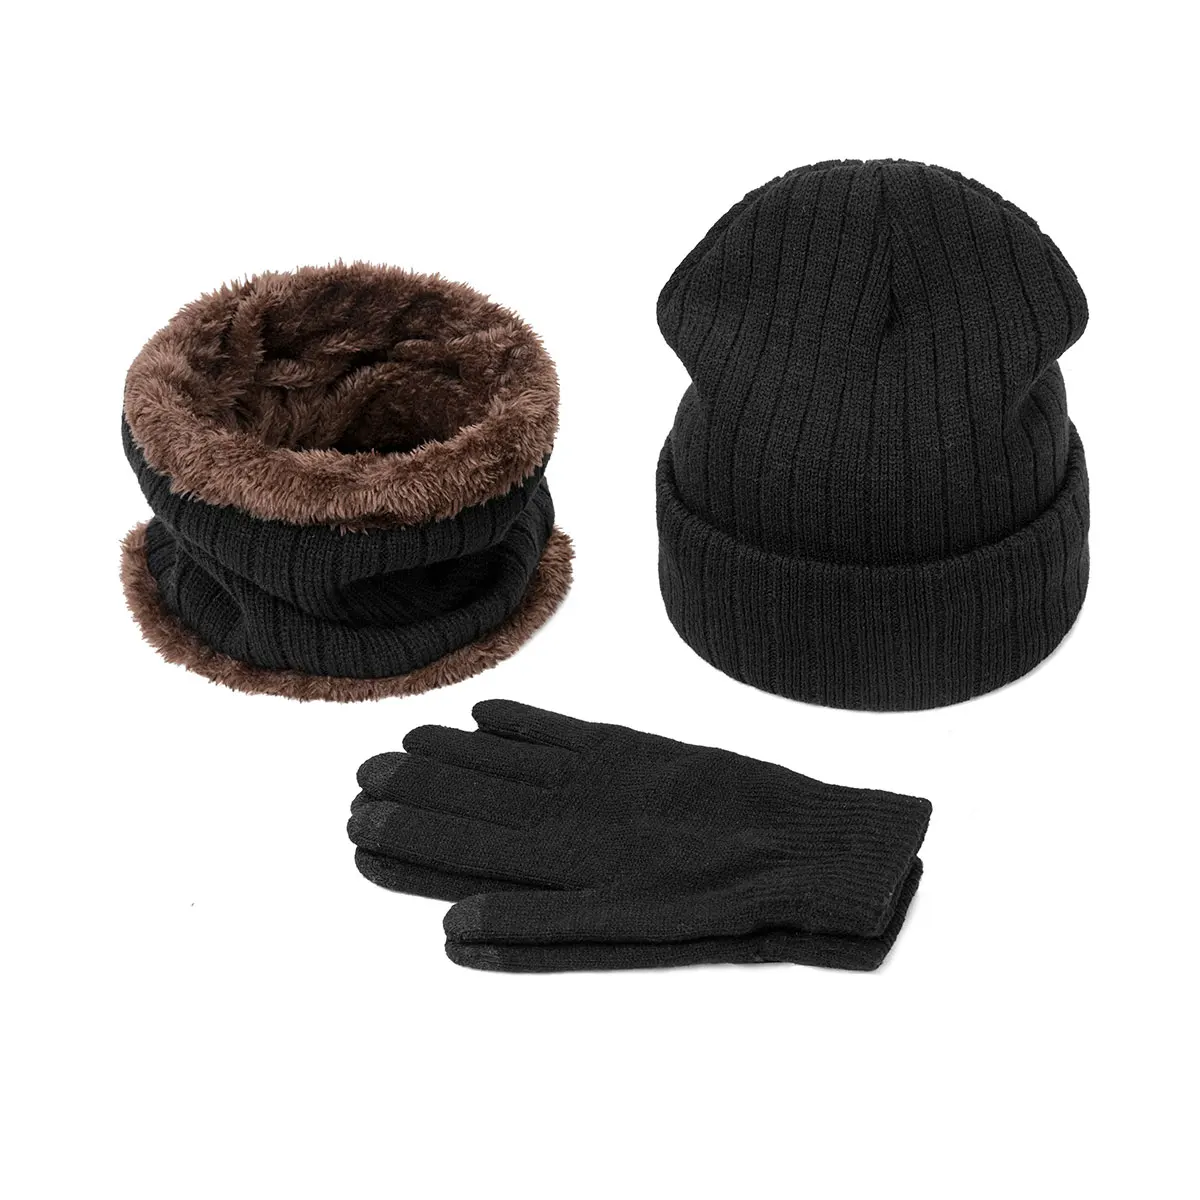 Новое поступление, зимняя теплая шапка, шарф, перчатки, набор, шапки бини, вязаные утолщенные шапки для мужчин и женщин, шапка, нагрудник, перчатки, костюм унисекс, 3 шт